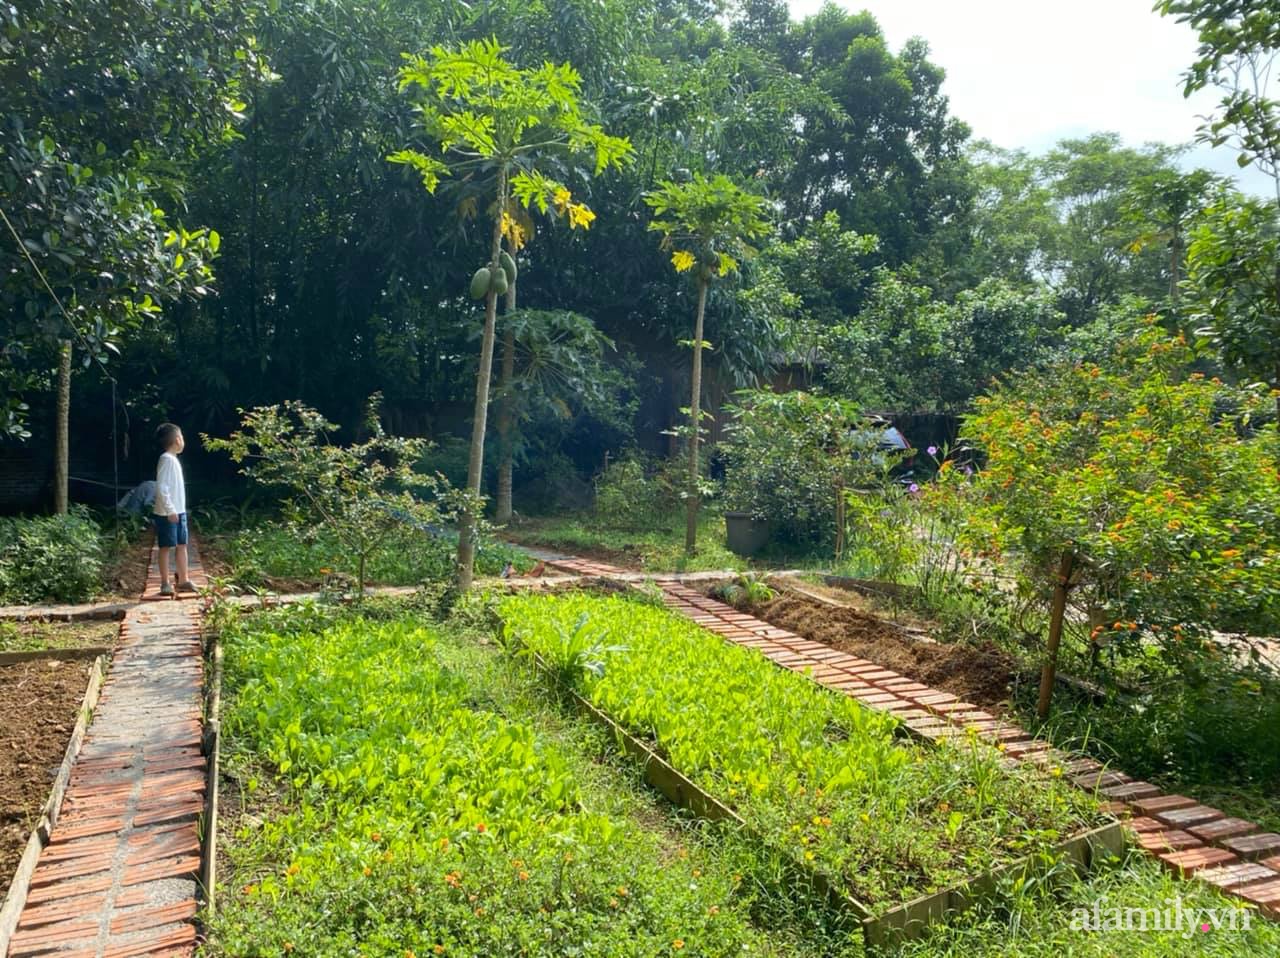 Cuộc sống yên bình trong ngôi nhà nhỏ cùng khu vườn xanh mát bóng cây ở ngoại thành Hà Nội - Ảnh 16.